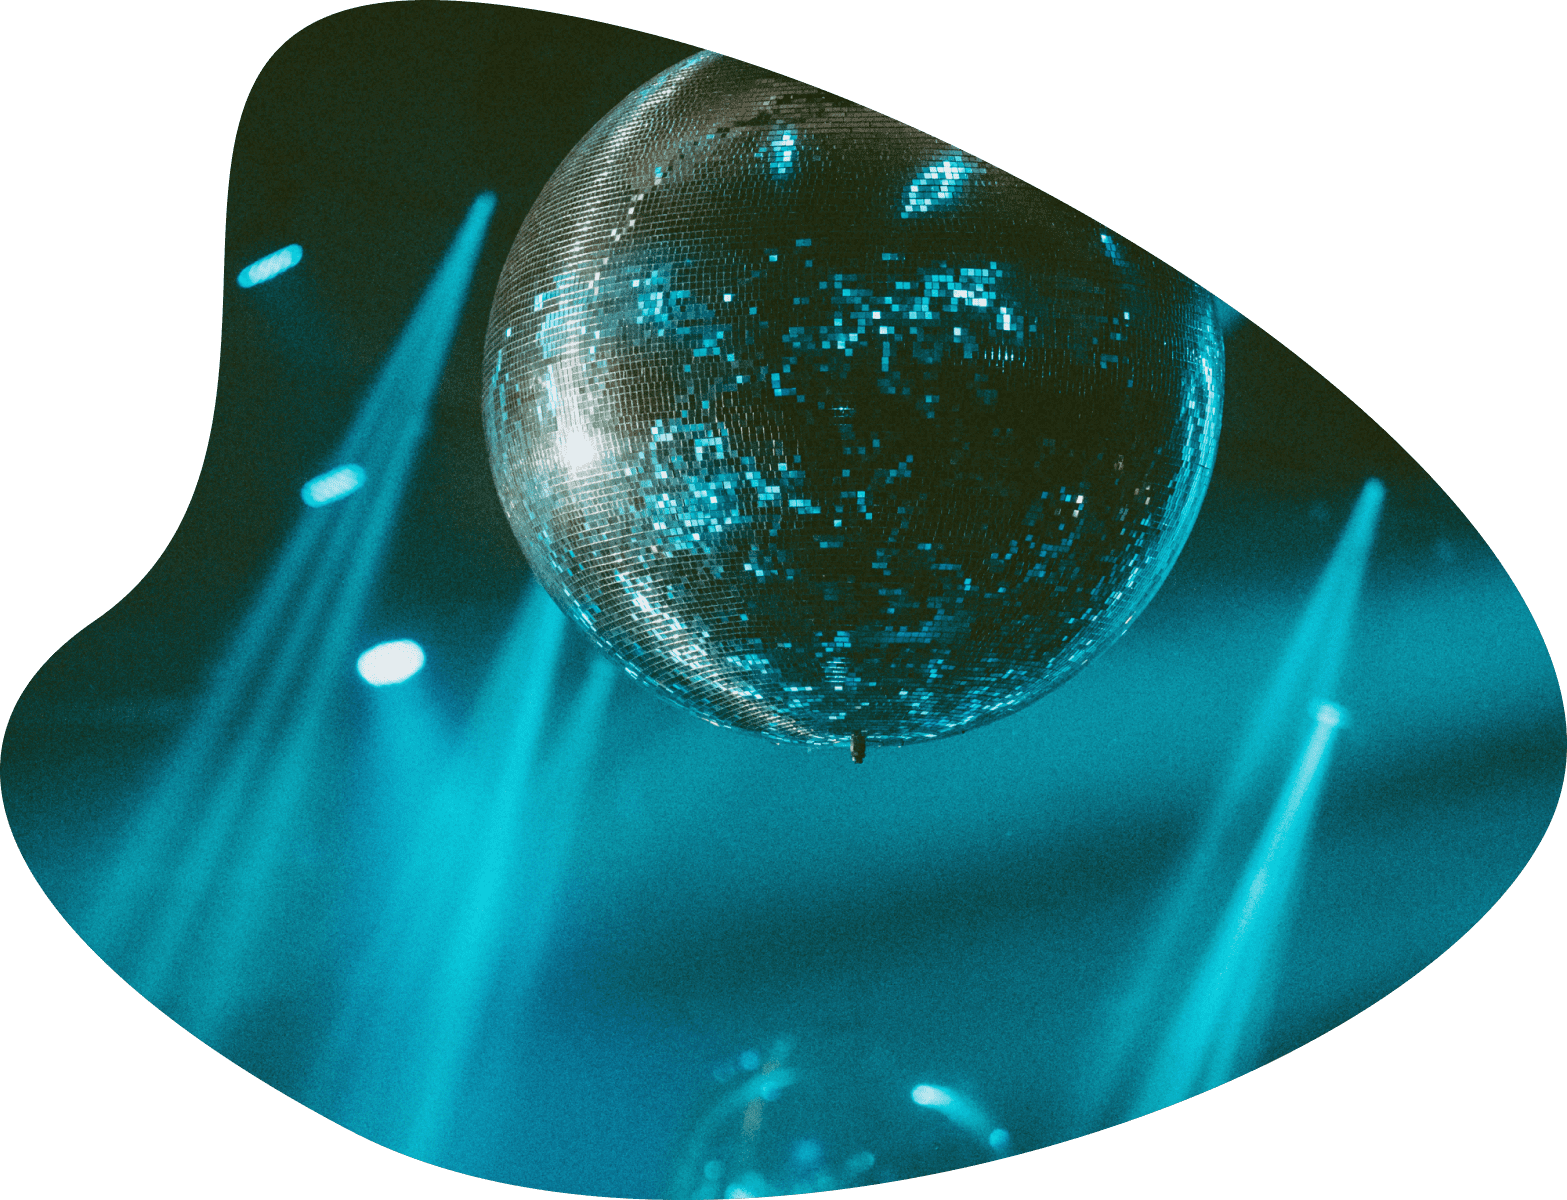 Disco Ball image